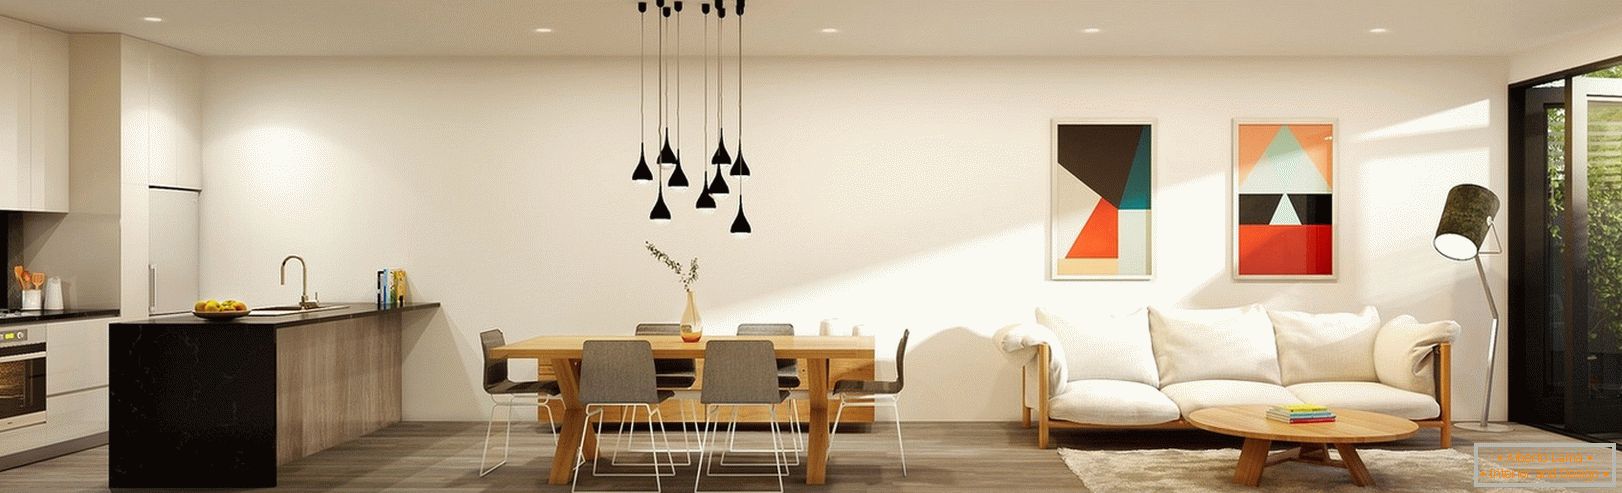 Interior design studio apartment from Lushviz